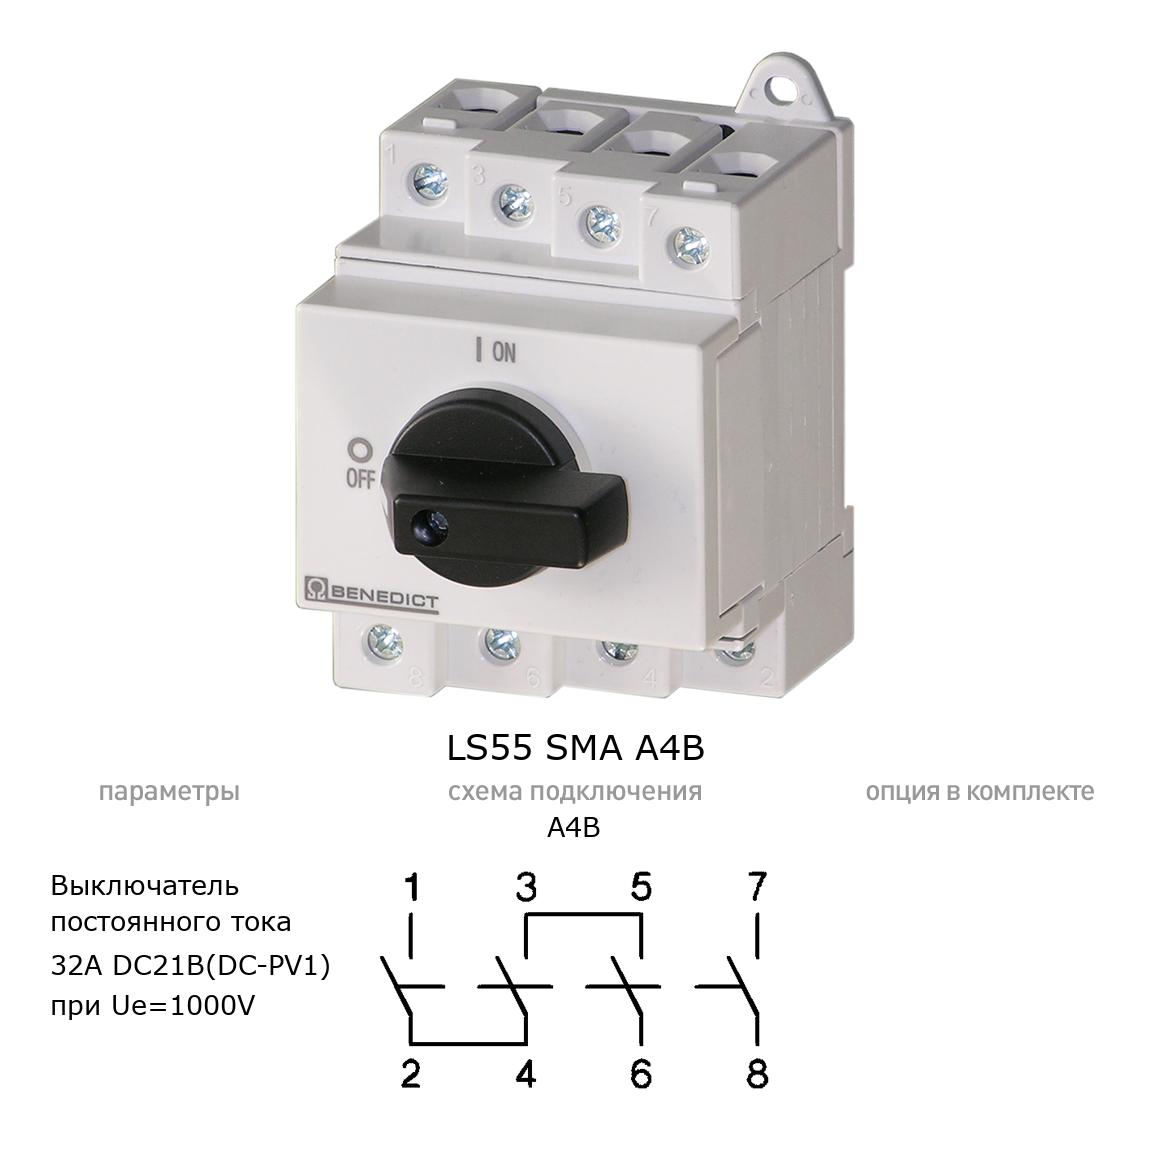 Кулачковый переключатель для постоянного тока (DC) LS55 SMA A4B BENEDICT